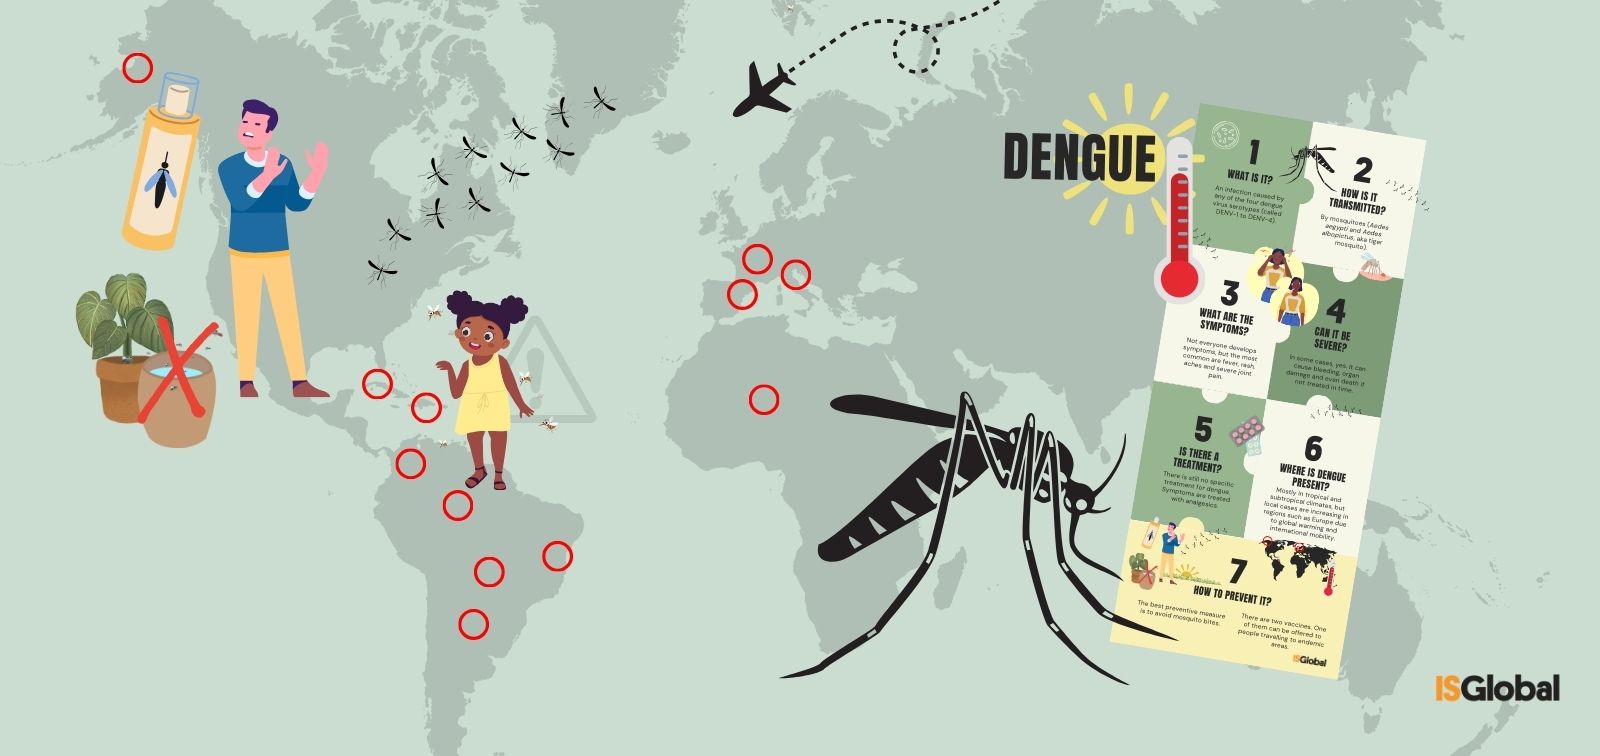 El dengue: una epidèmia global explicada
